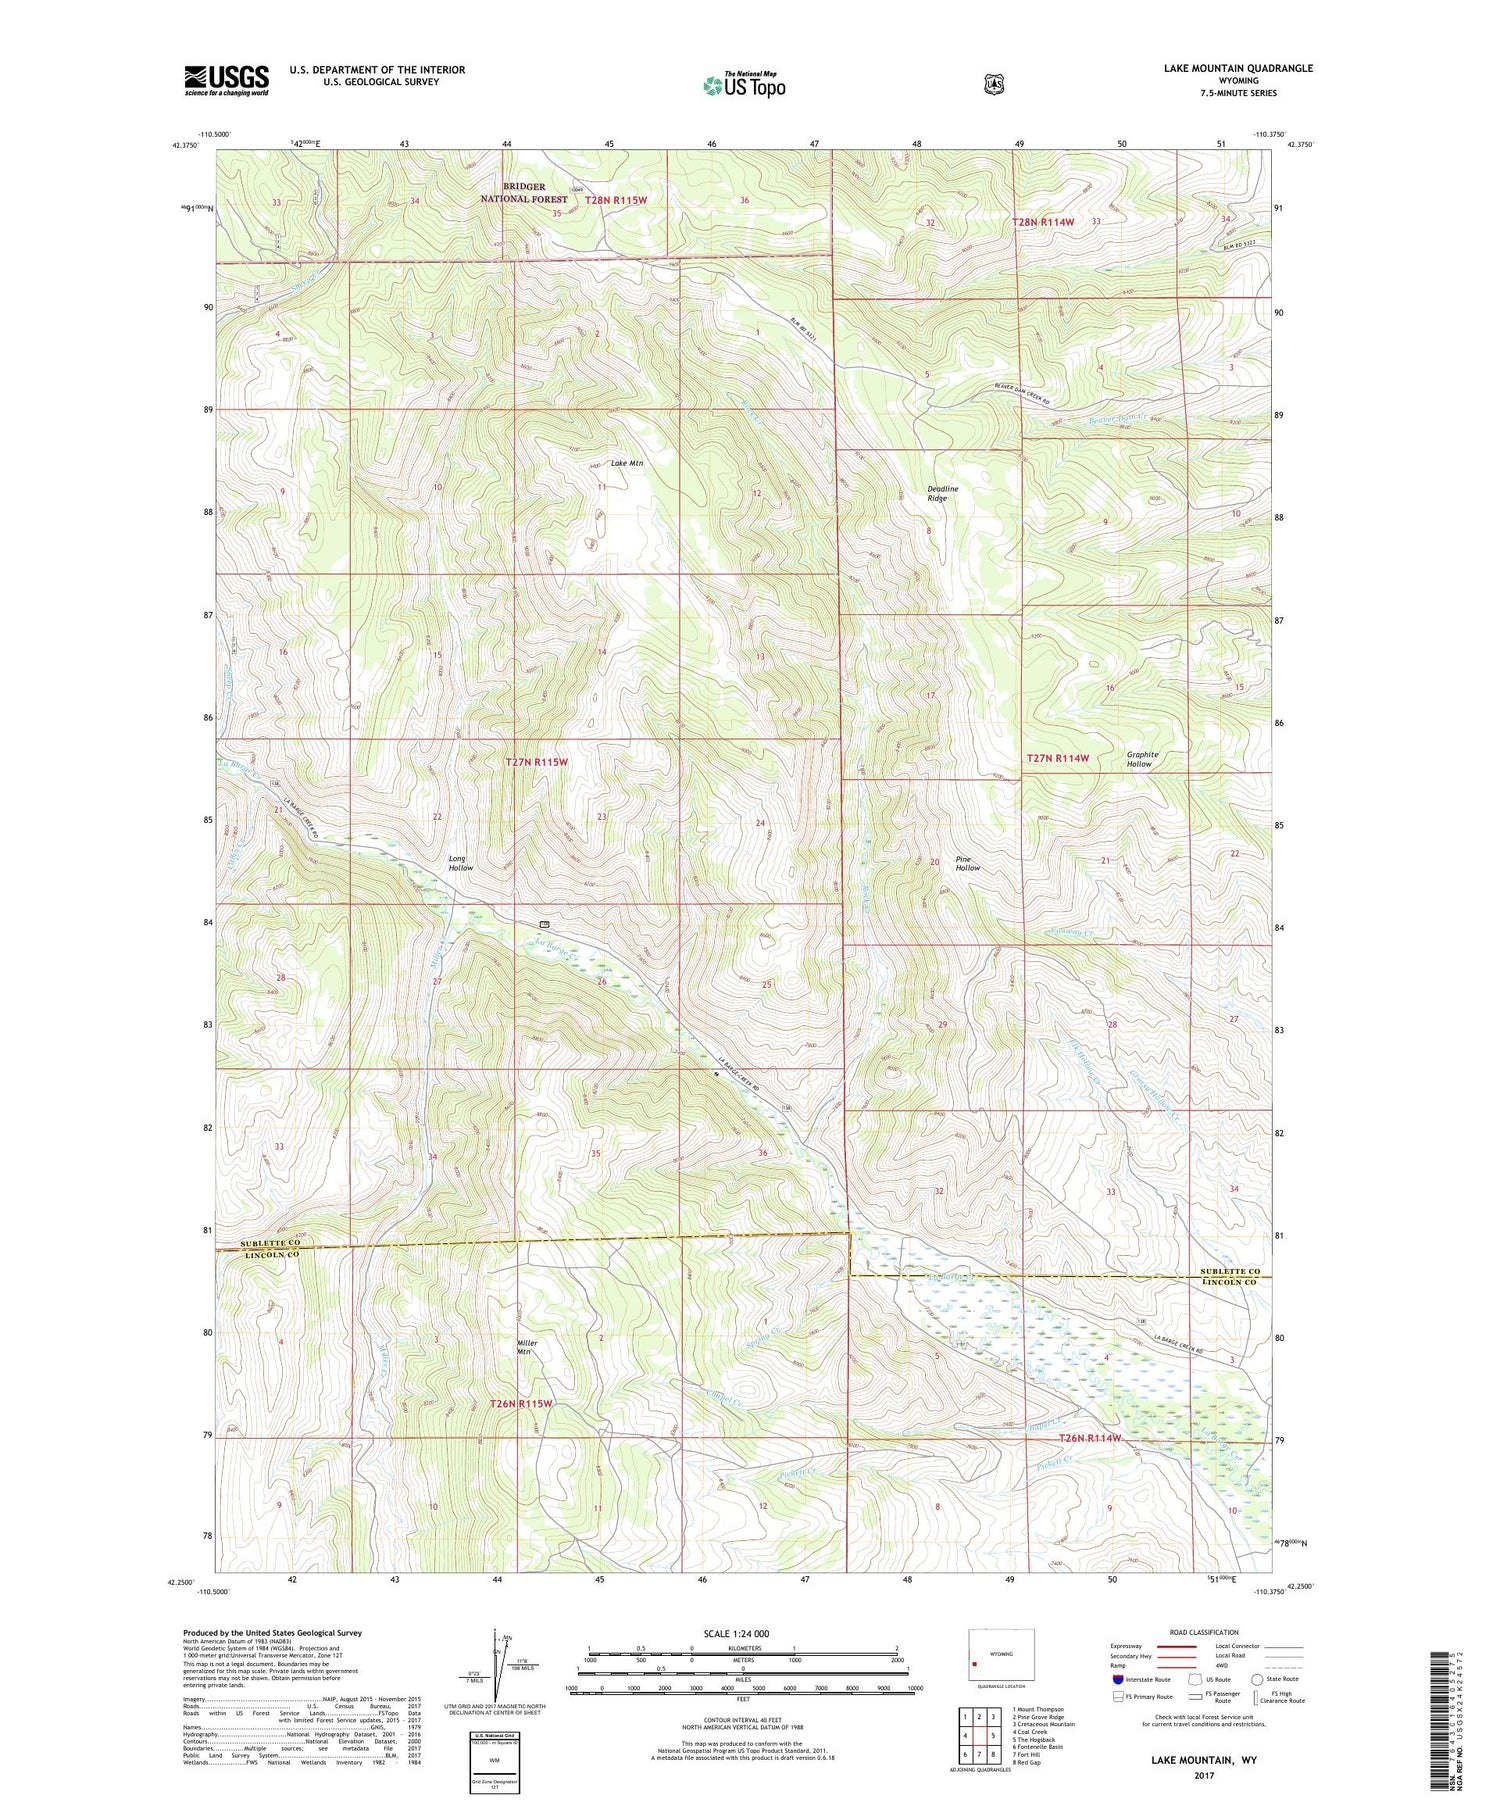 Lake Mountain Wyoming US Topo Map Image